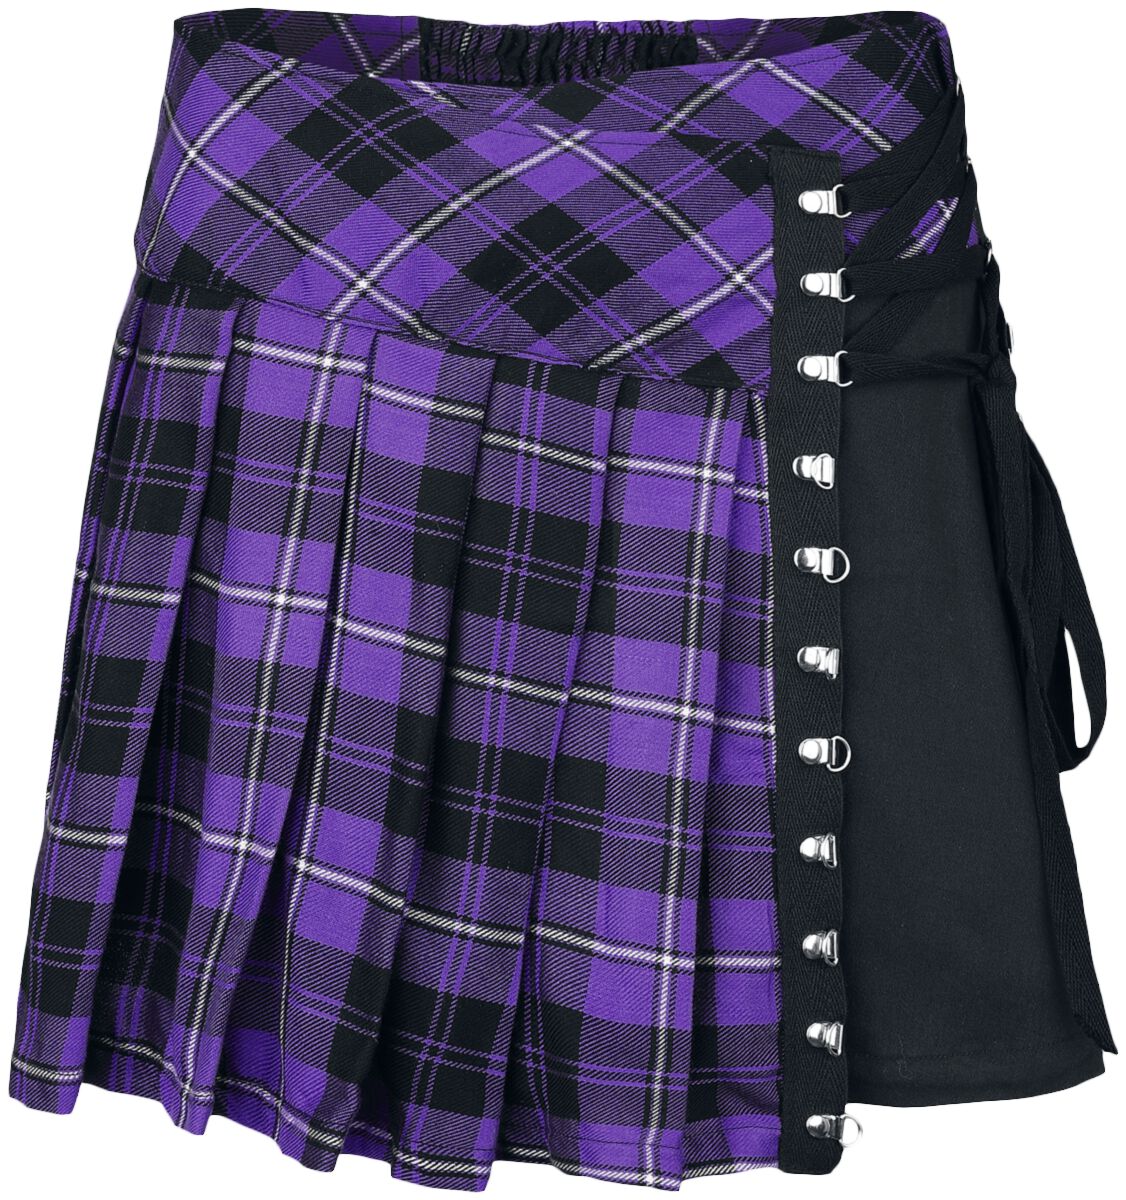 Chemical Black Hybrid Skirt Kurzer Rock lila schwarz in XS